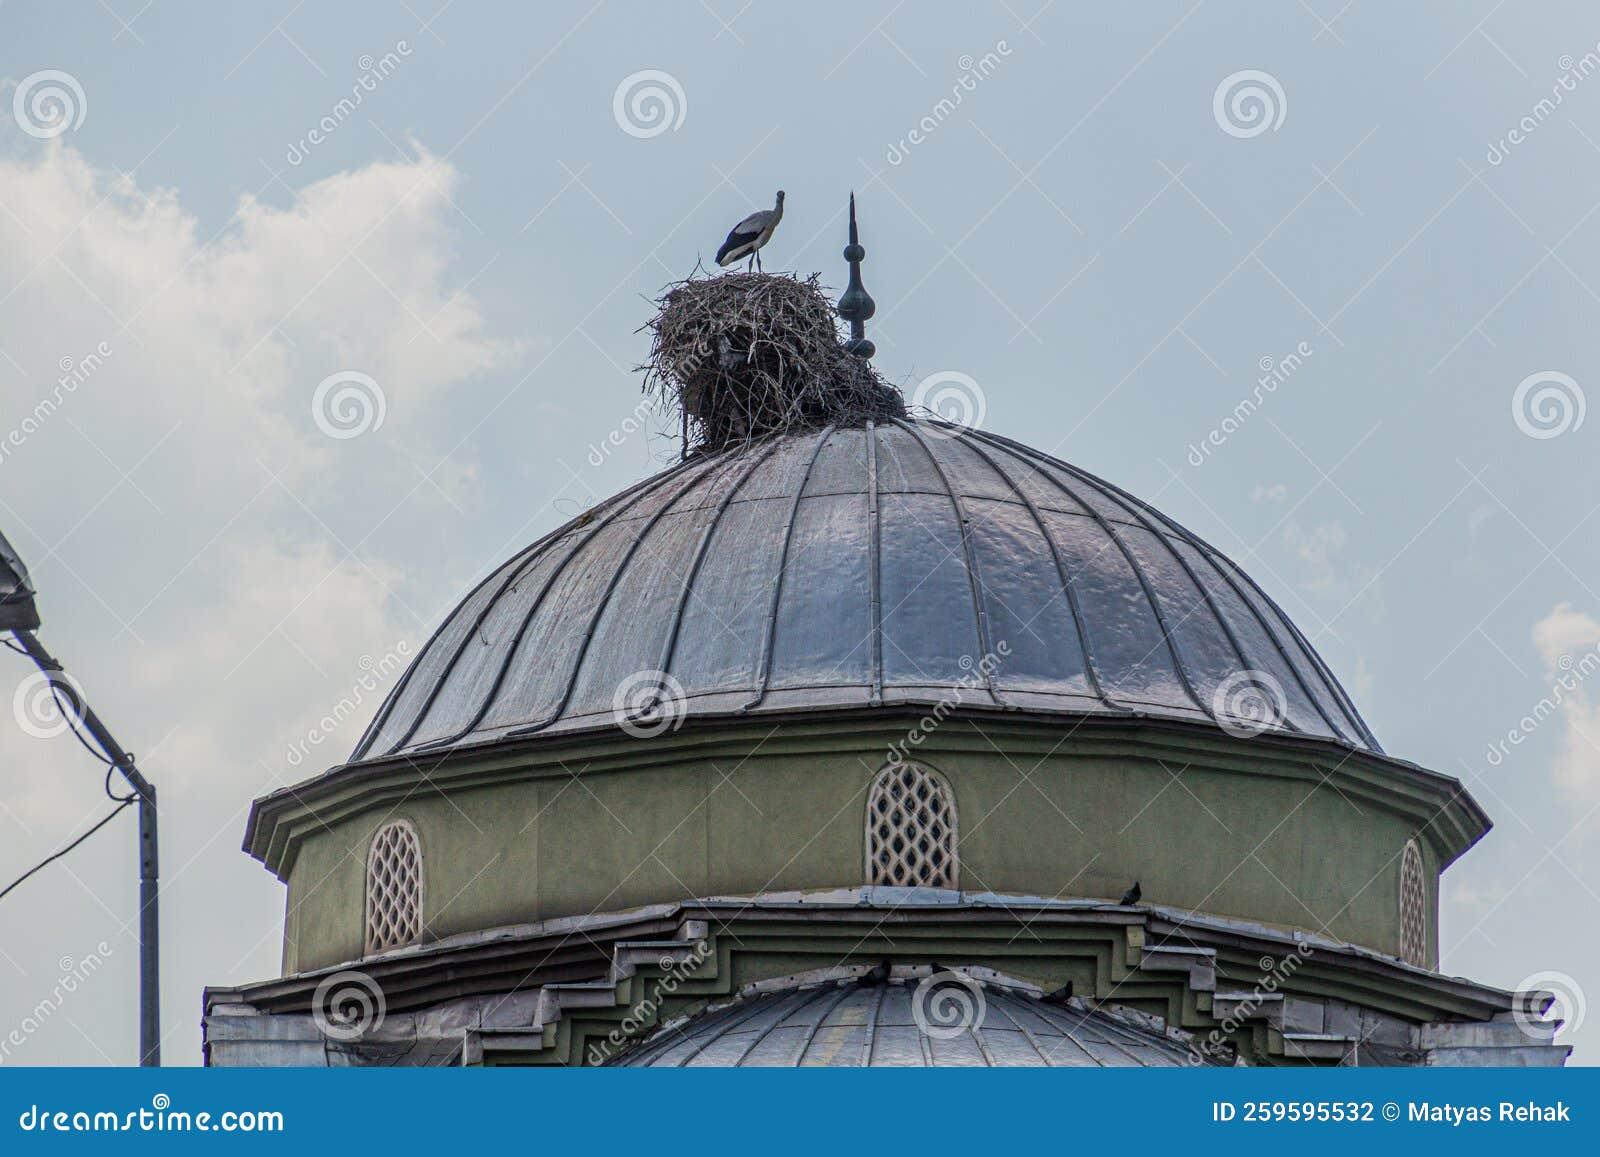 stork nest on haci hacer cami mosque in igdir, turk